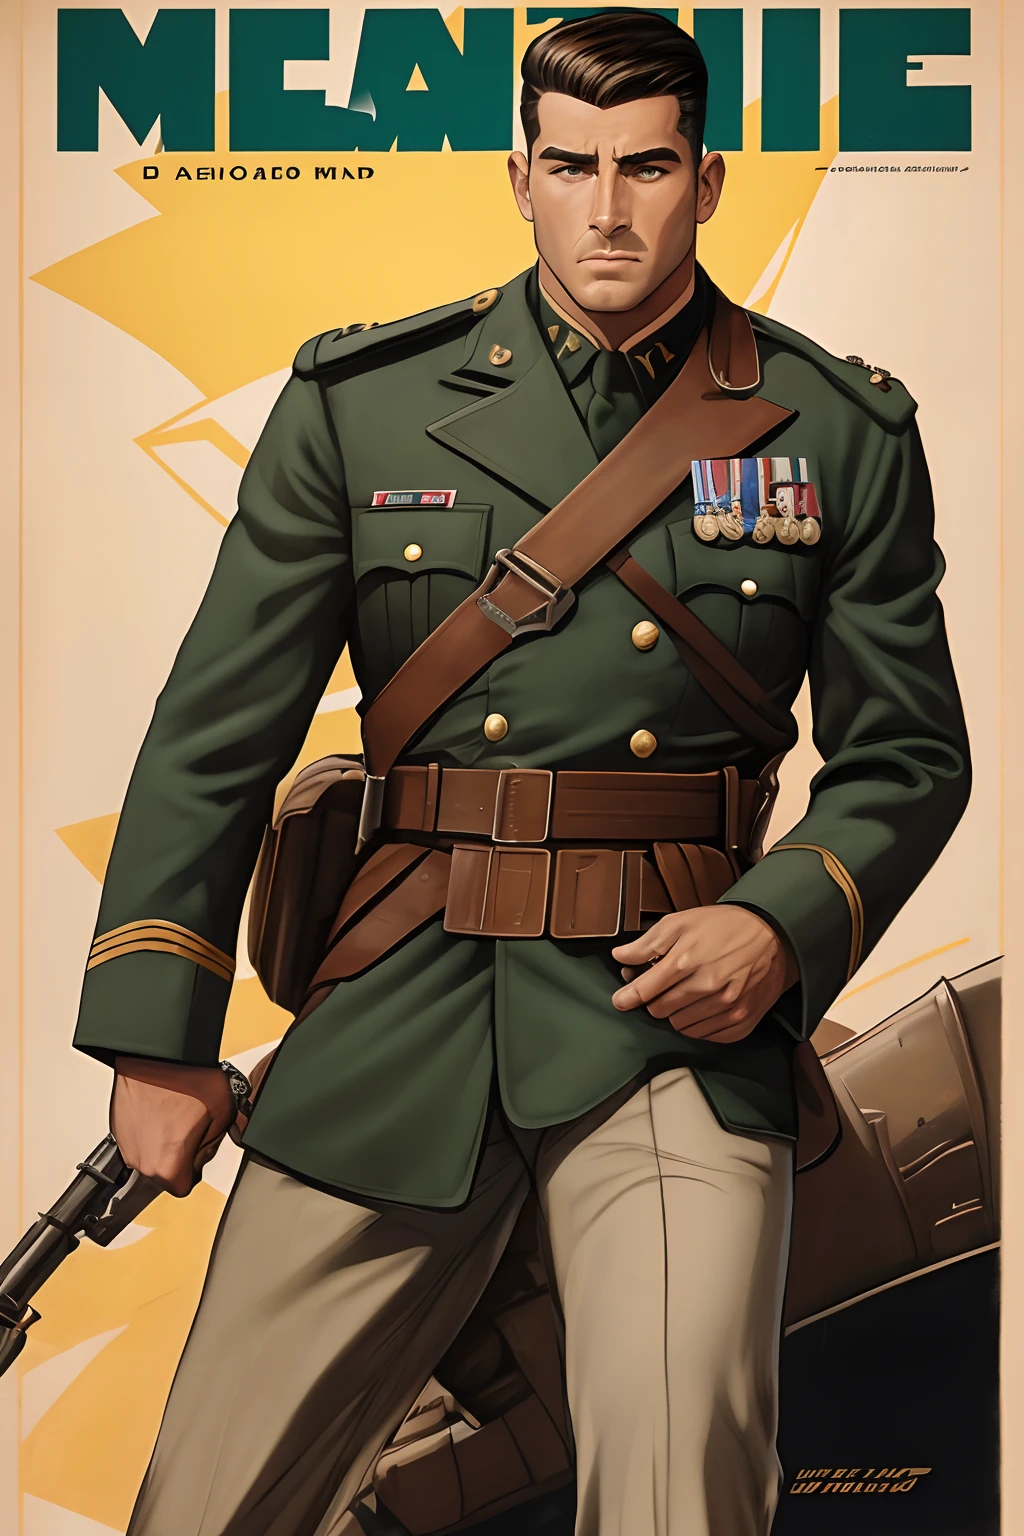 受约翰·布西马启发的艺术, 第二次世界大戰海報, 我們看到一名學員向上級敬禮, 完美的軍裝, 及肩短髮, 紅色髮色, 淺綠色的眼睛, 小乳房, 修长的身材, 在戰場上威風凜凜, 砲火, 展現嚴肅和信念的場景